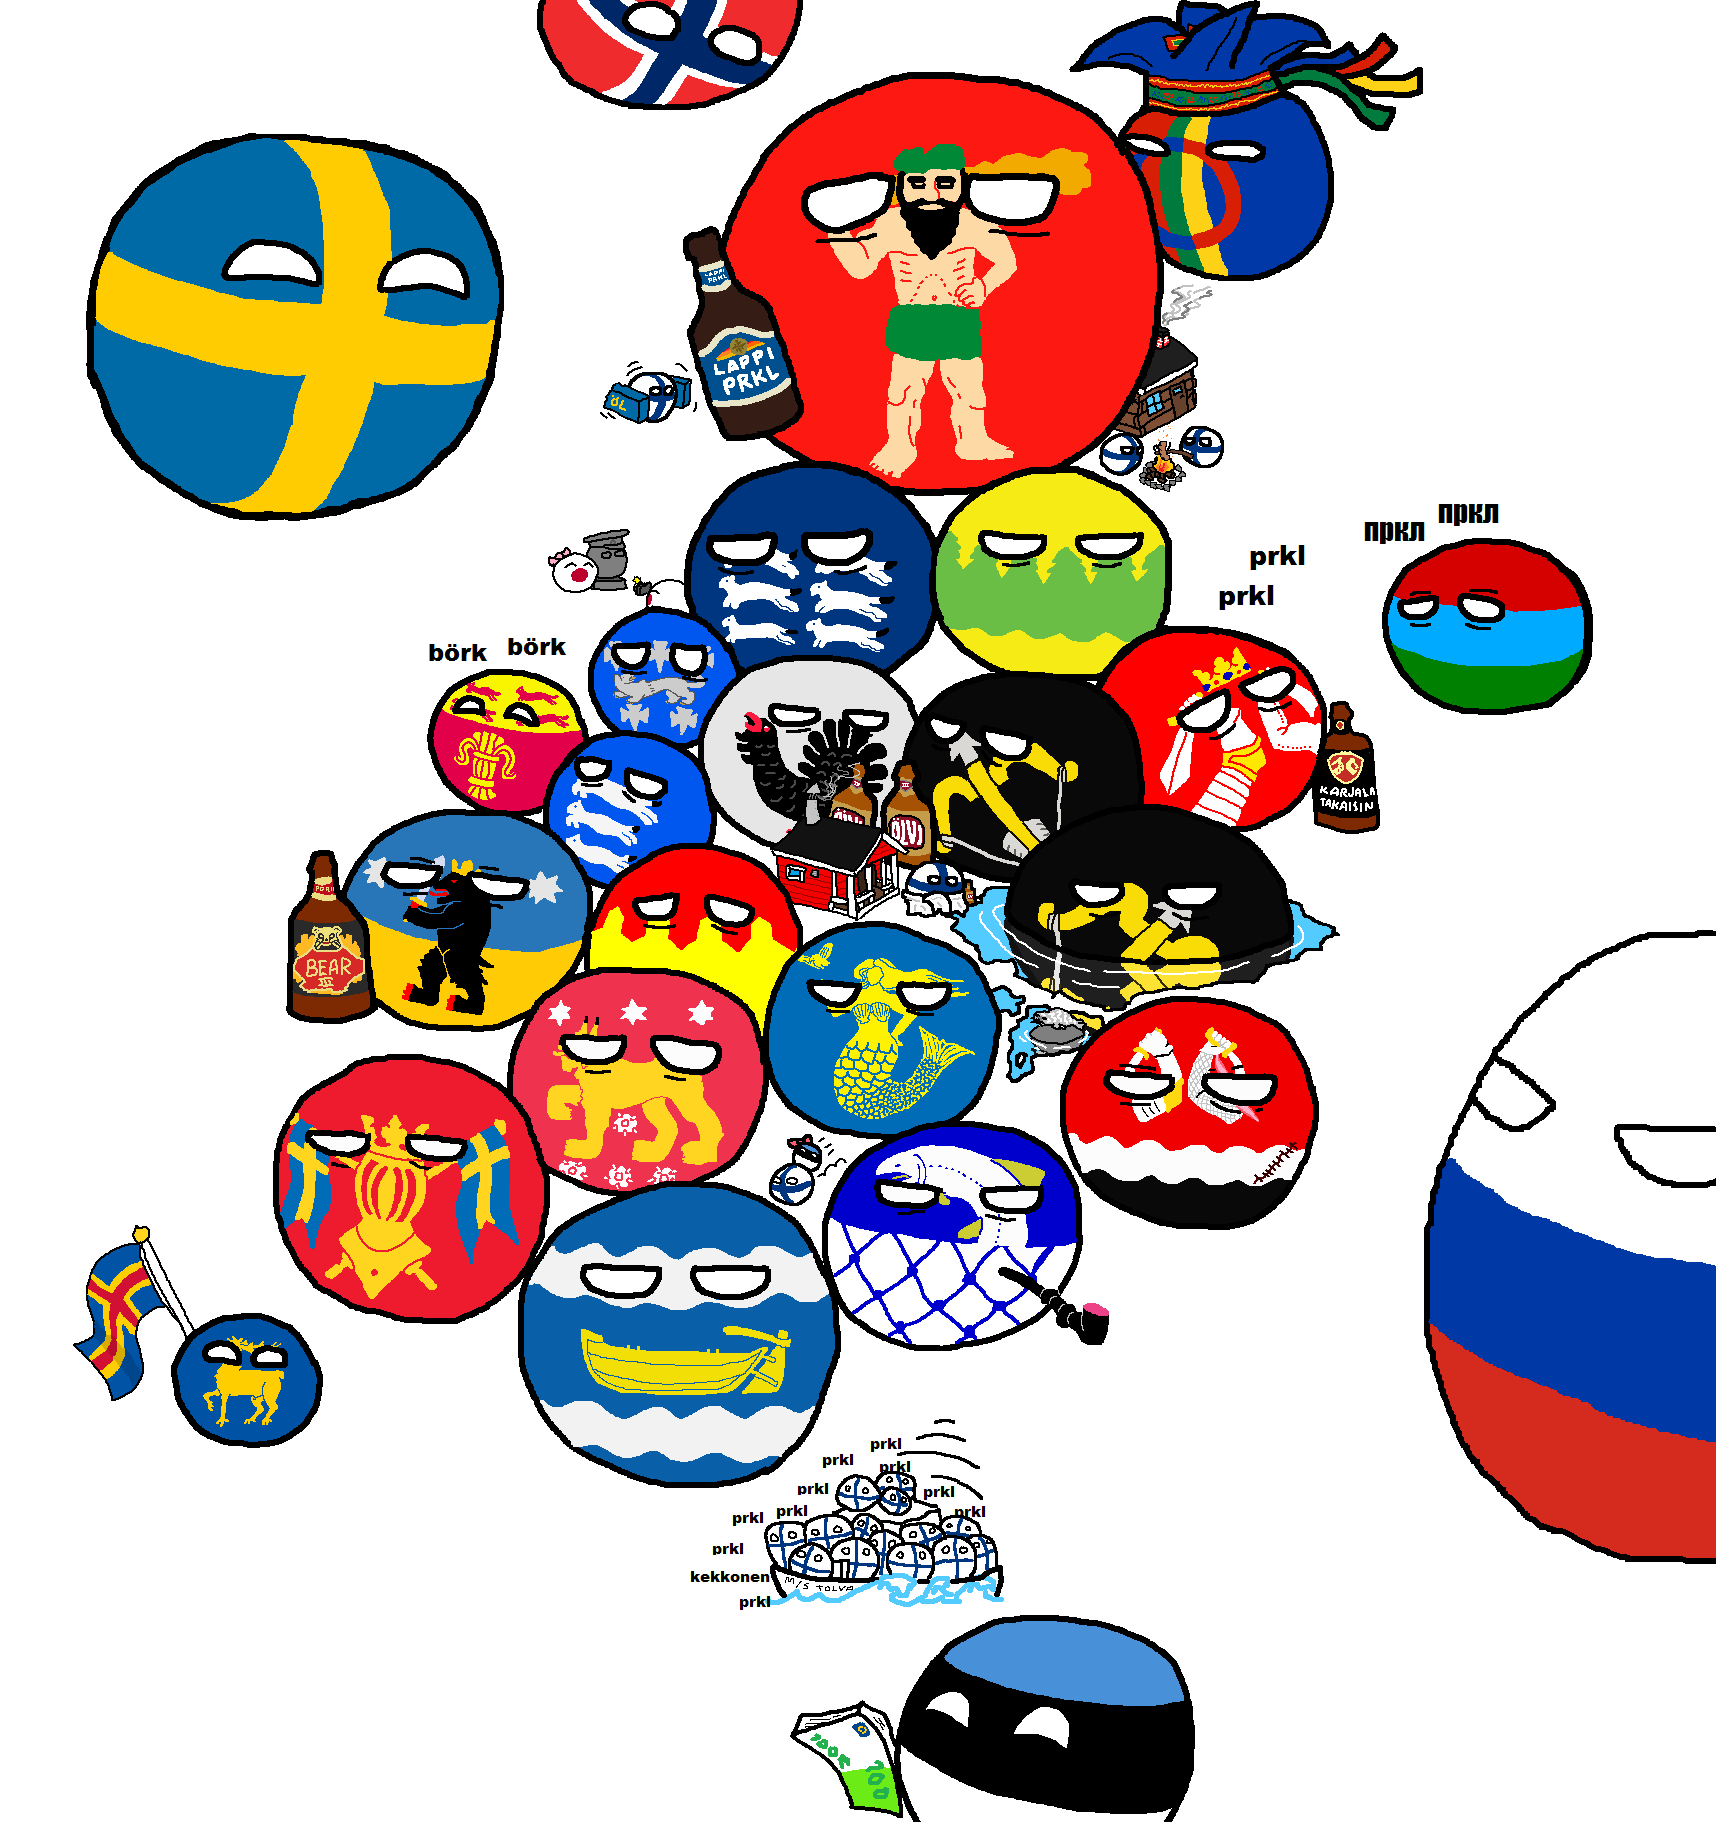 Polandball map of Finland